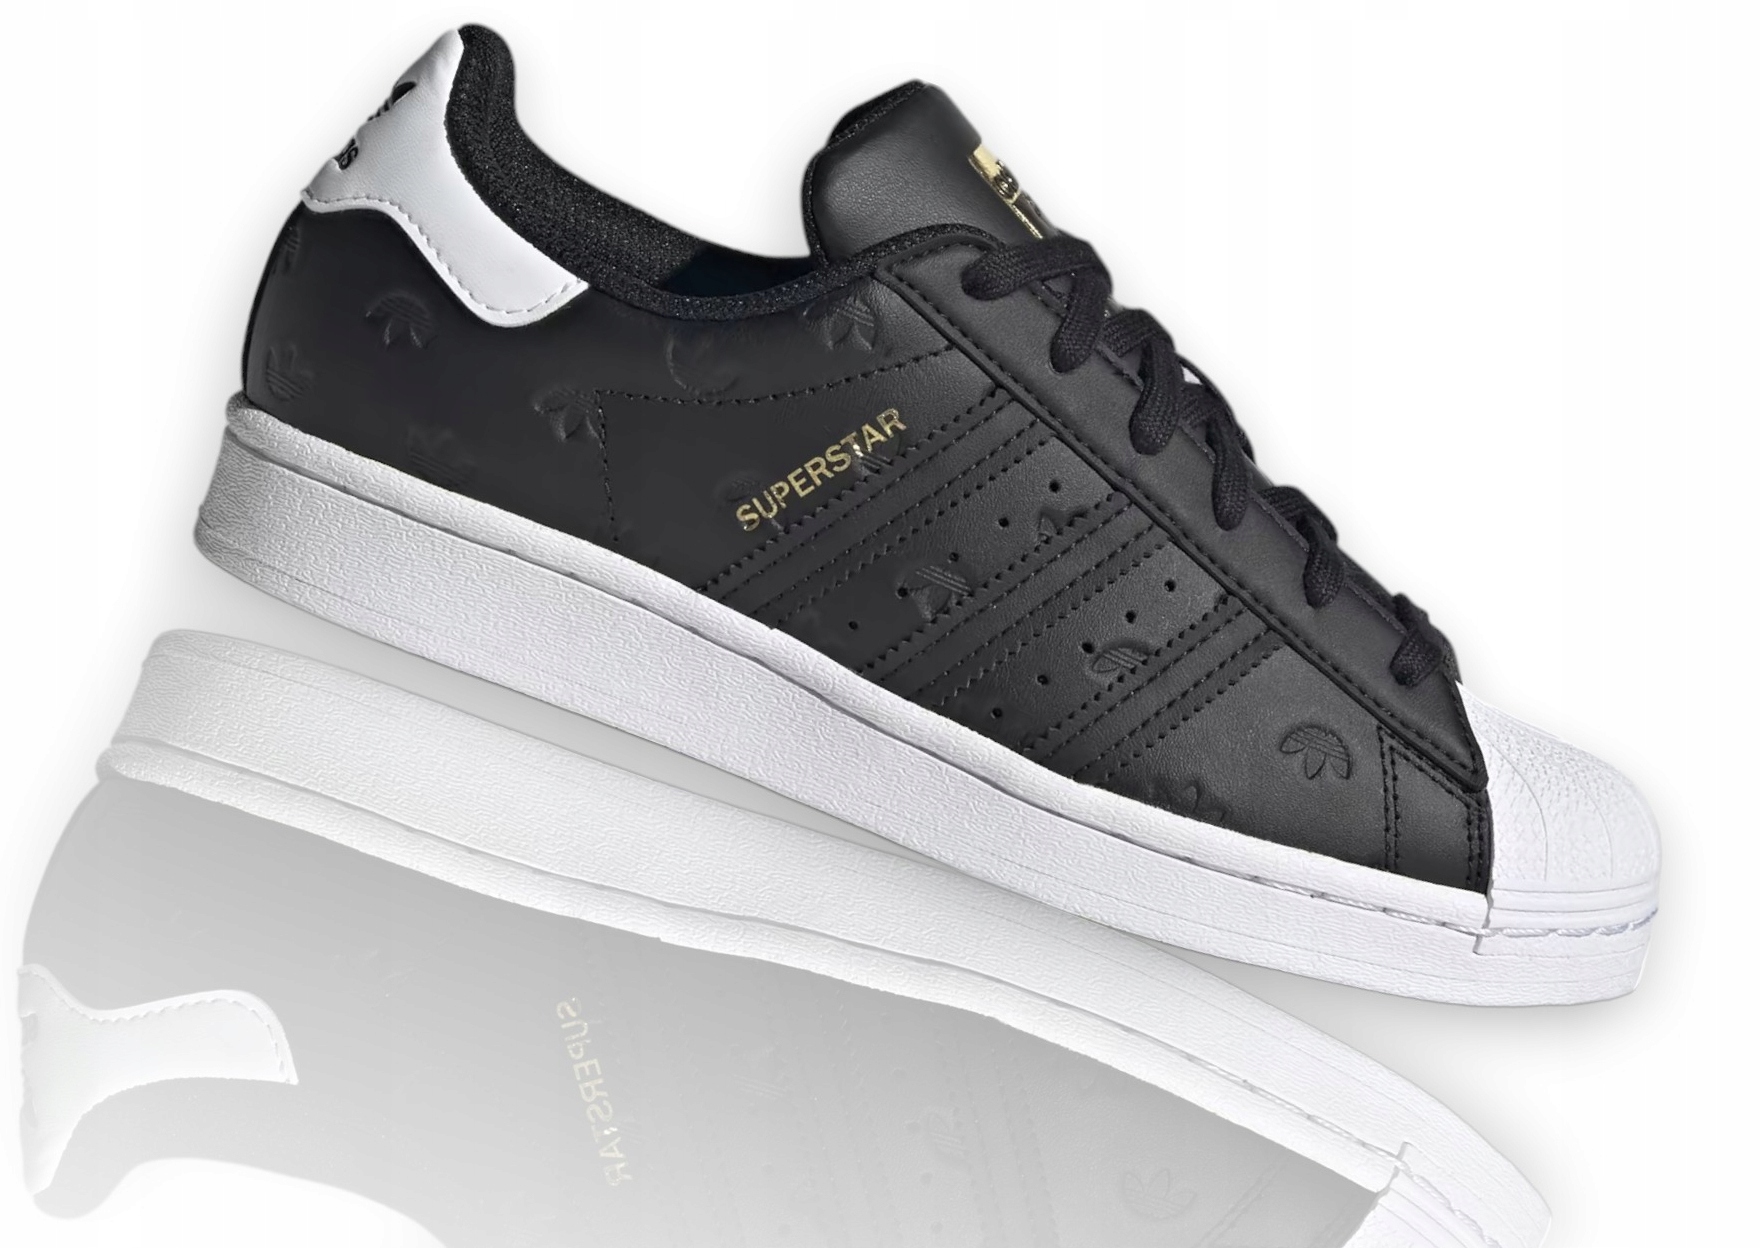 Adidas Superstar Czarne 40 2/3 - Buty damskie - stylowe obuwie damskie -  Allegro.pl